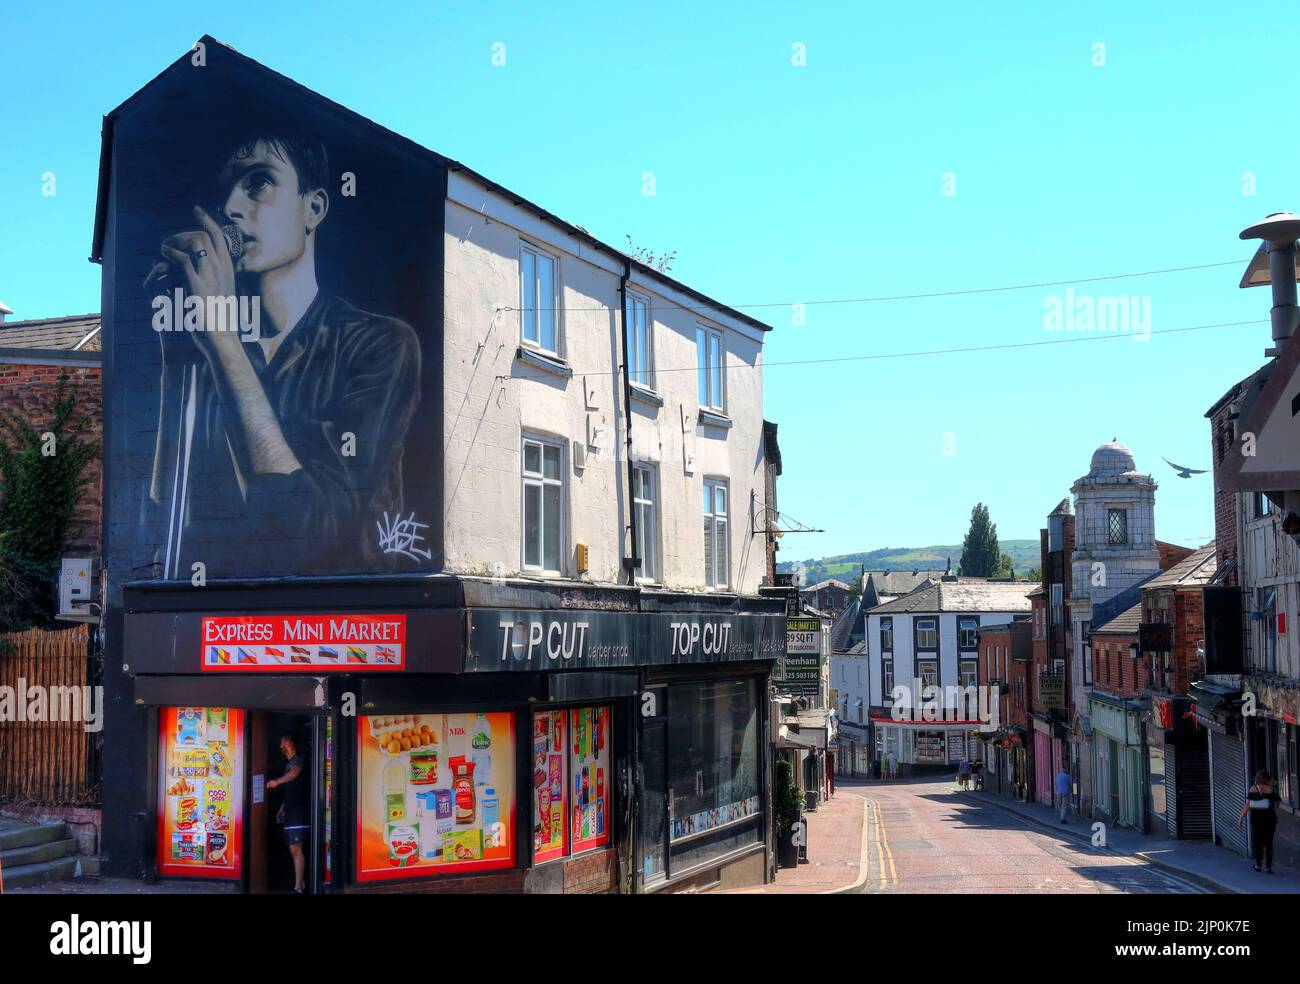 Ian Curtis, Sänger von Joy Division Wandbild von Aske, Straßenkünstler aus Manchester, Mill Street, Macclesfield, Cheshire, ENGLAND, GROSSBRITANNIEN,SK11 6NN Stockfoto